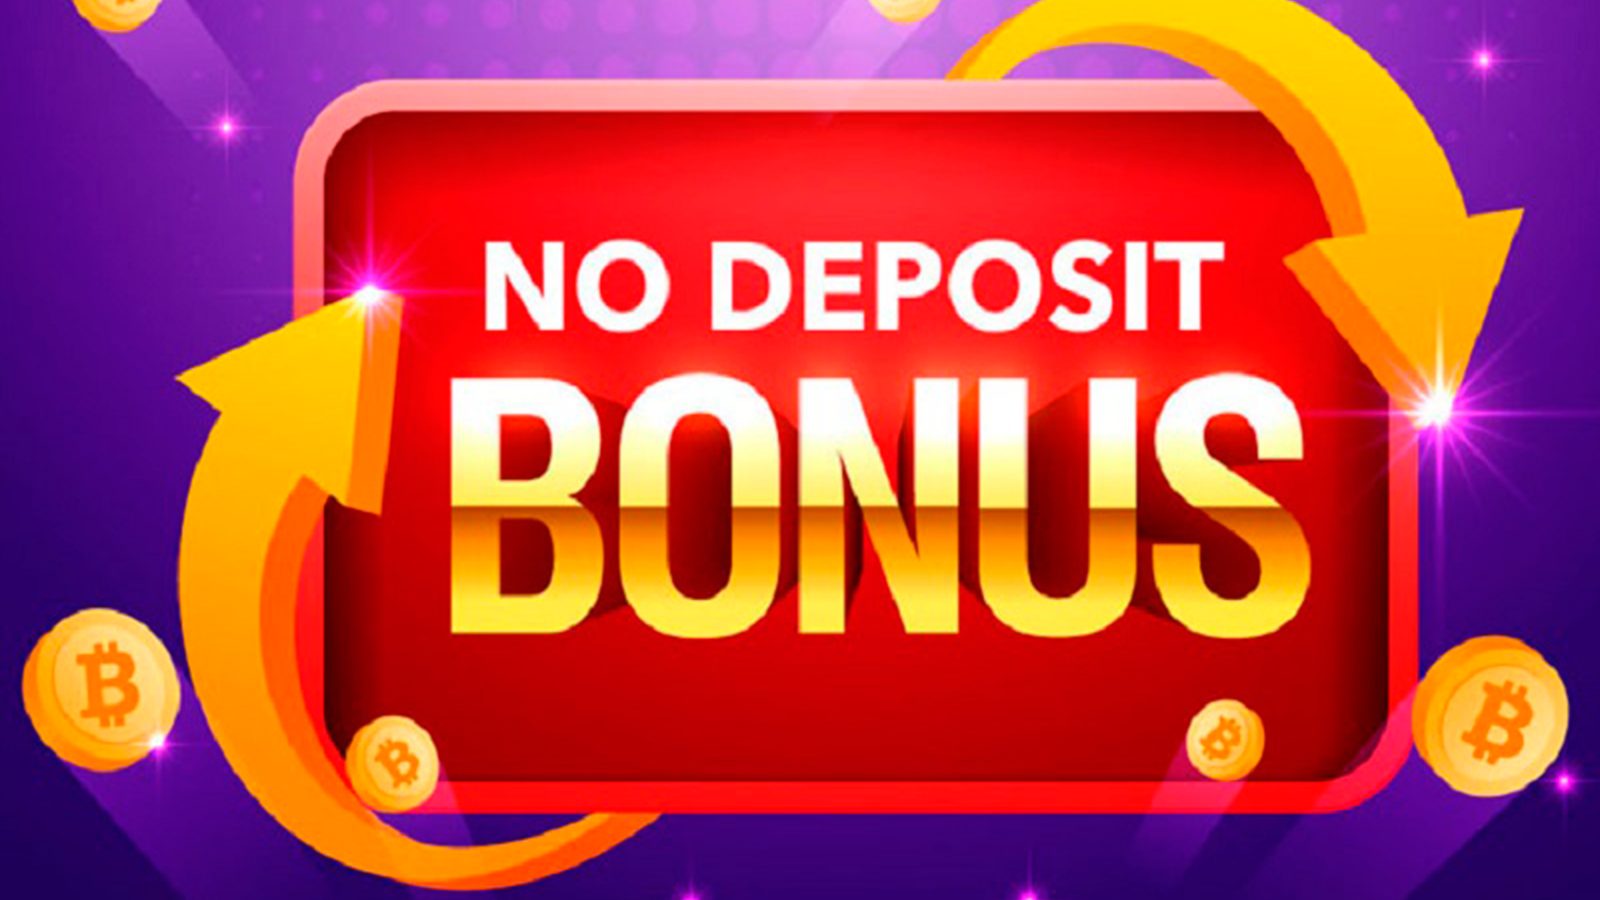 €14 No Deposit Casino Bonus